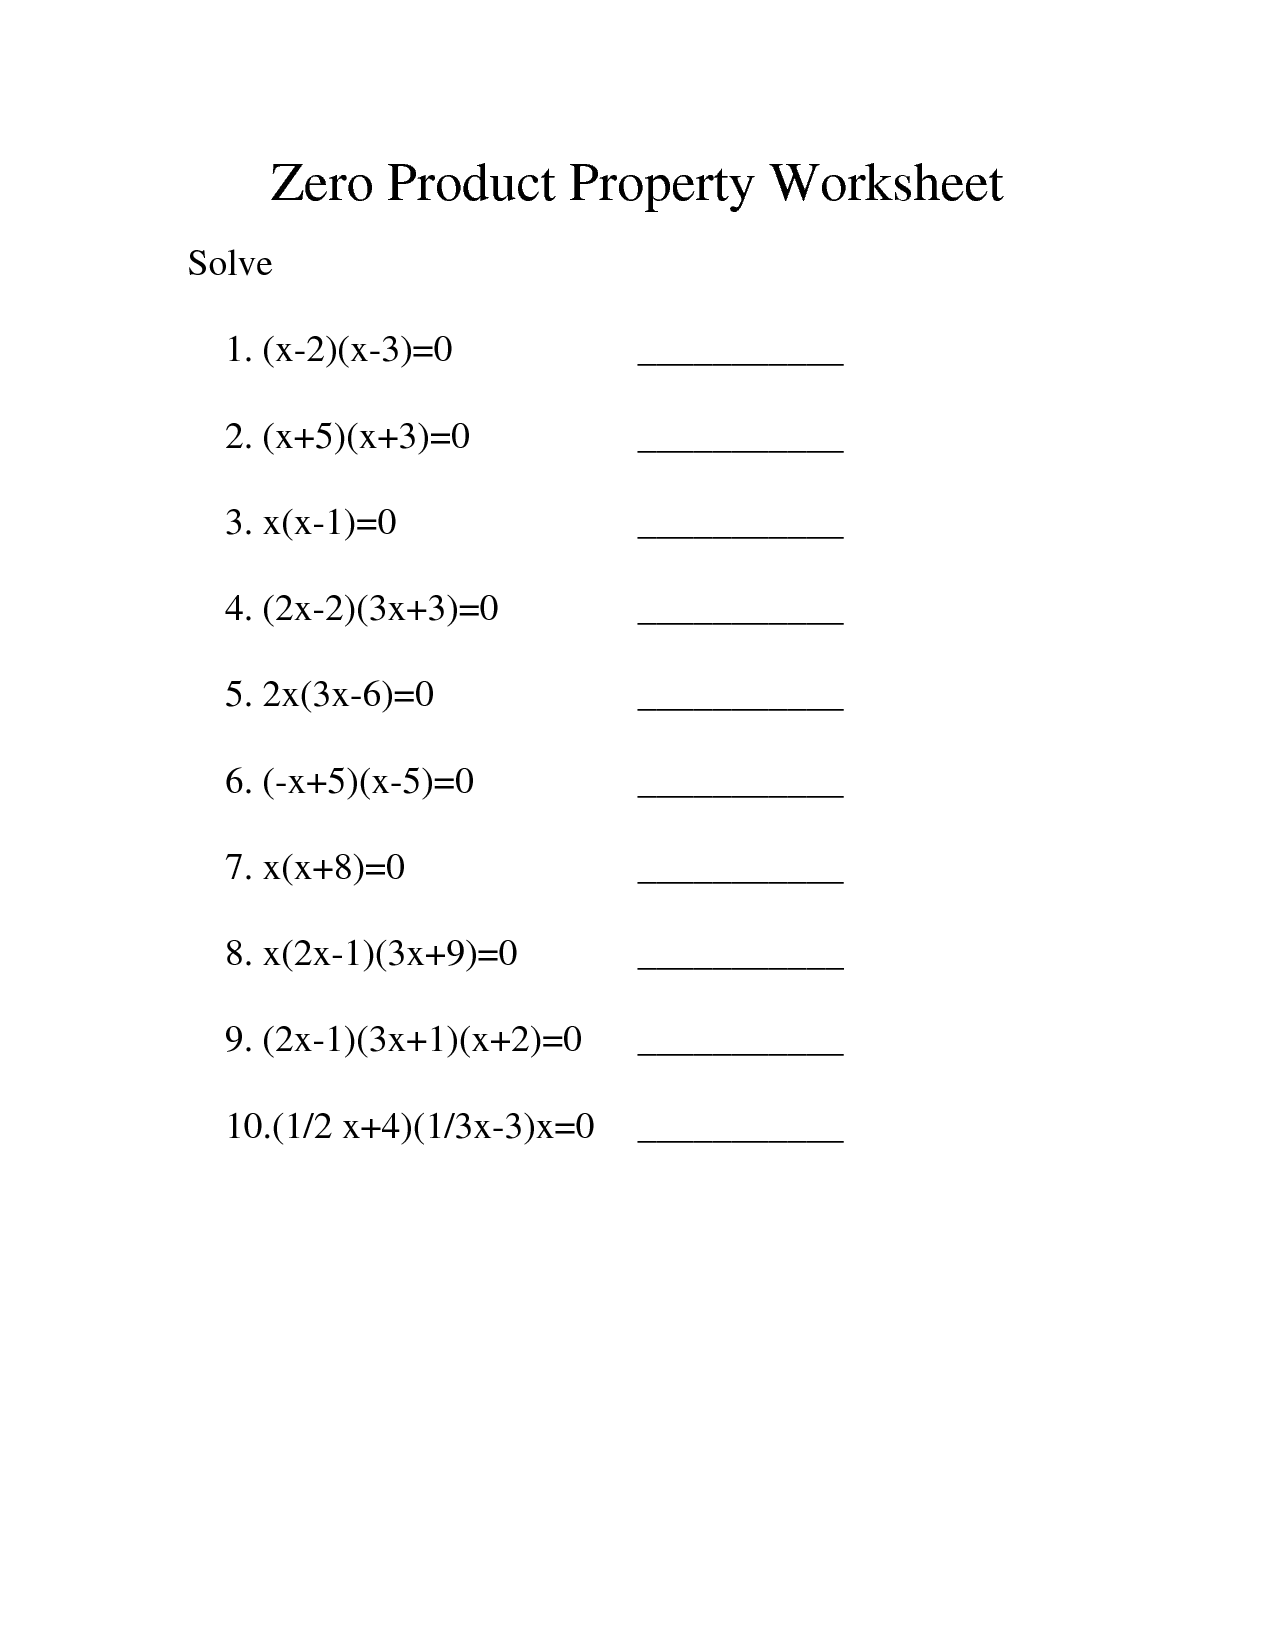 Zero Product Property Worksheet Image